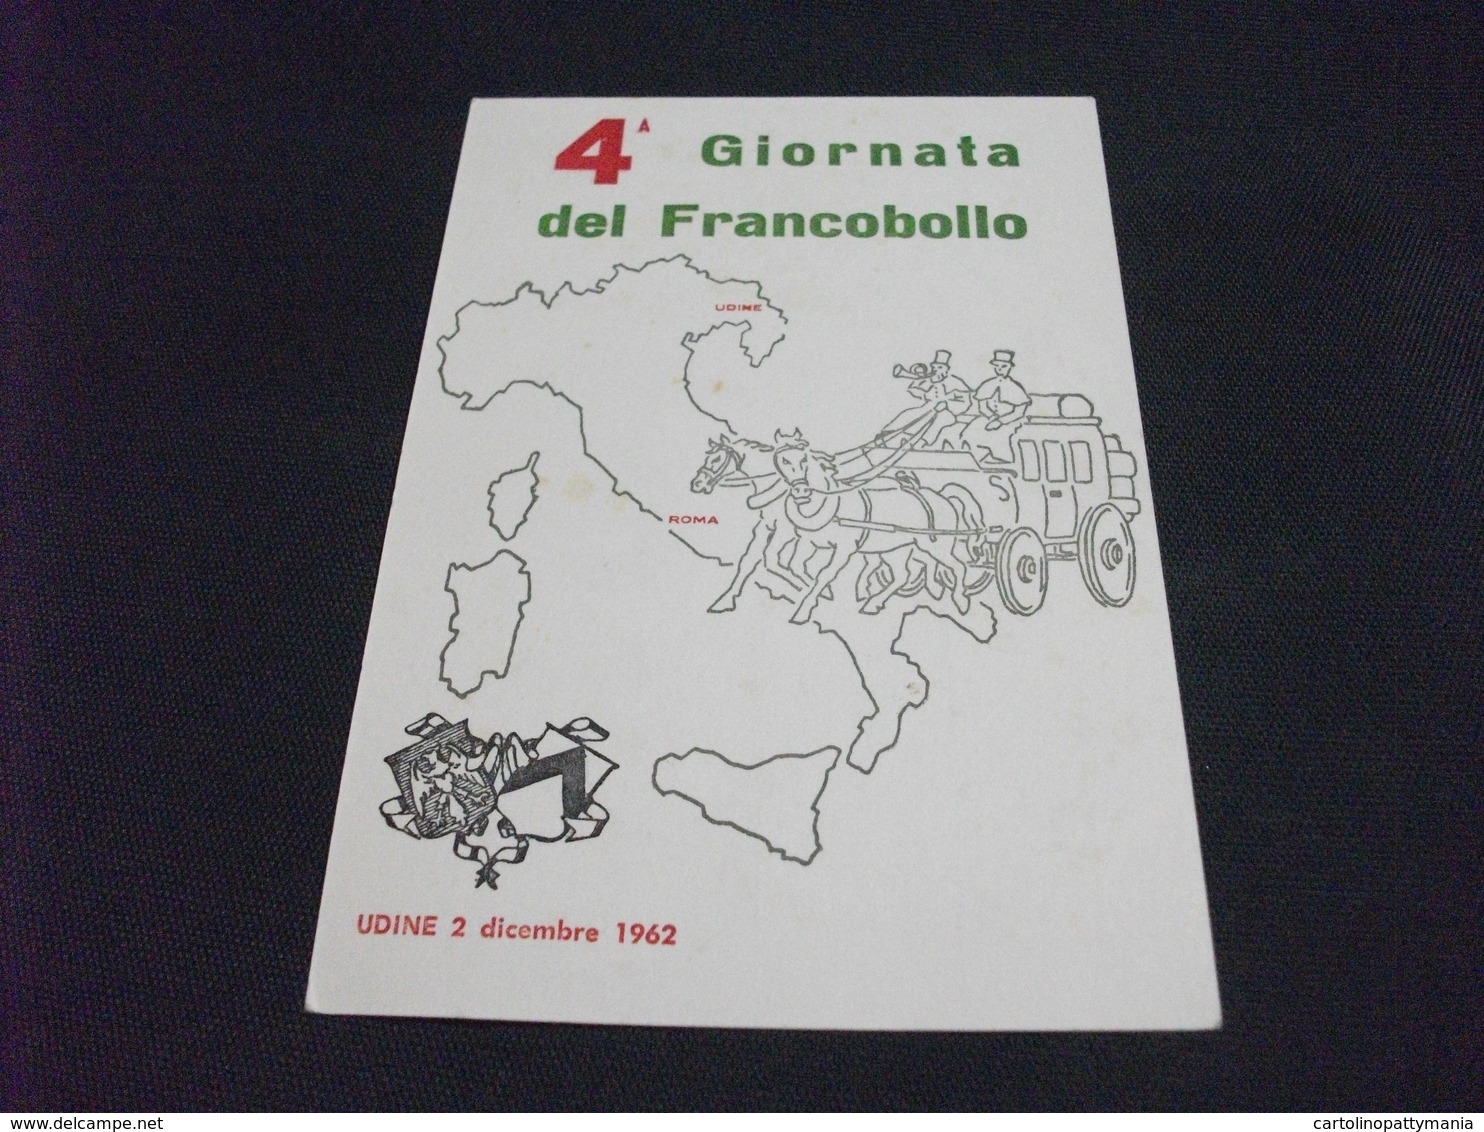 4° GIORNATA DEL FRANCOBOLLO UDINE 1962 - Borse E Saloni Del Collezionismo